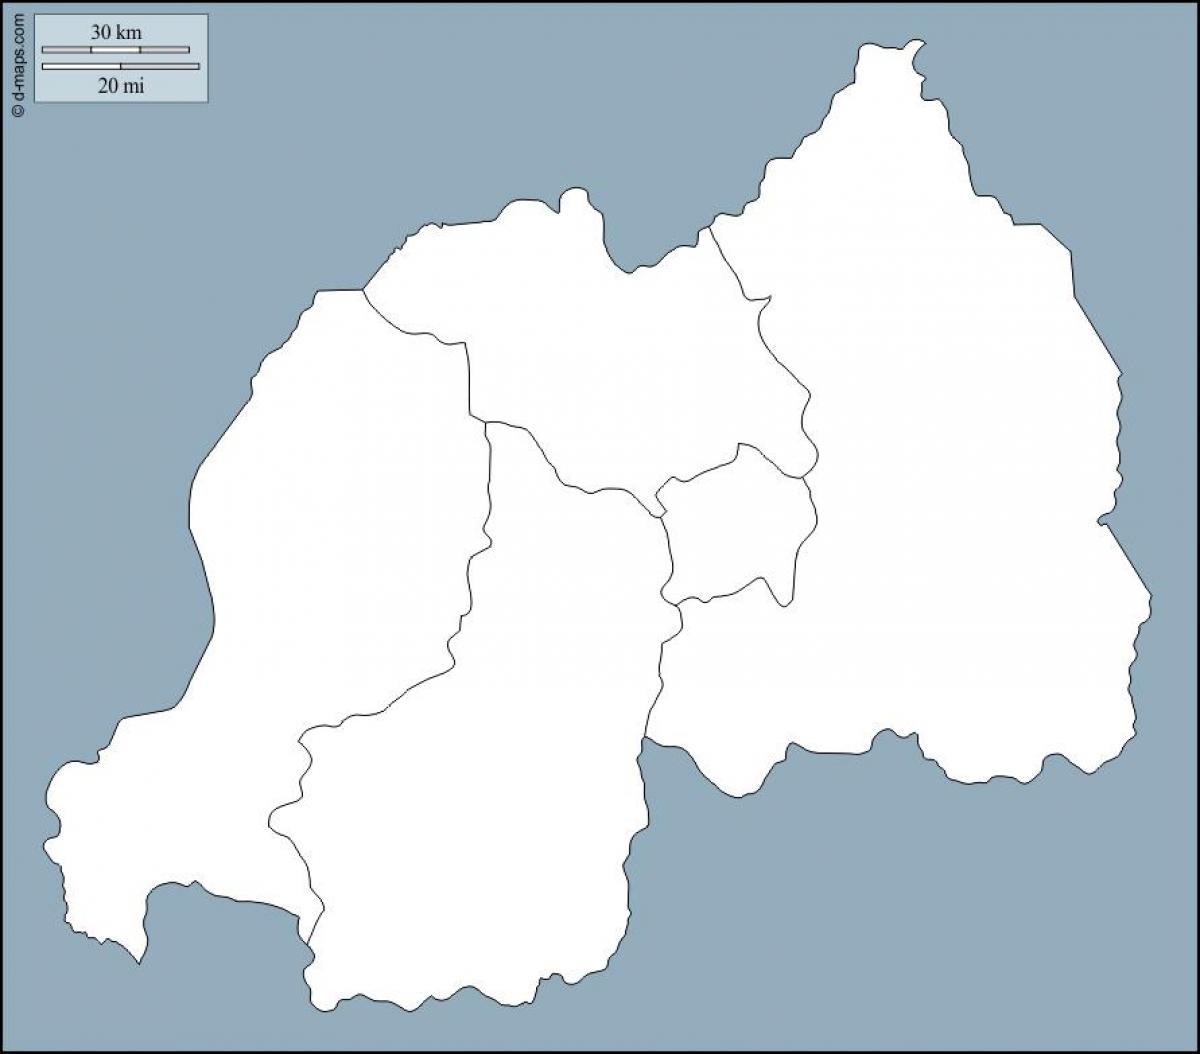 Rwanda mapa de contorn